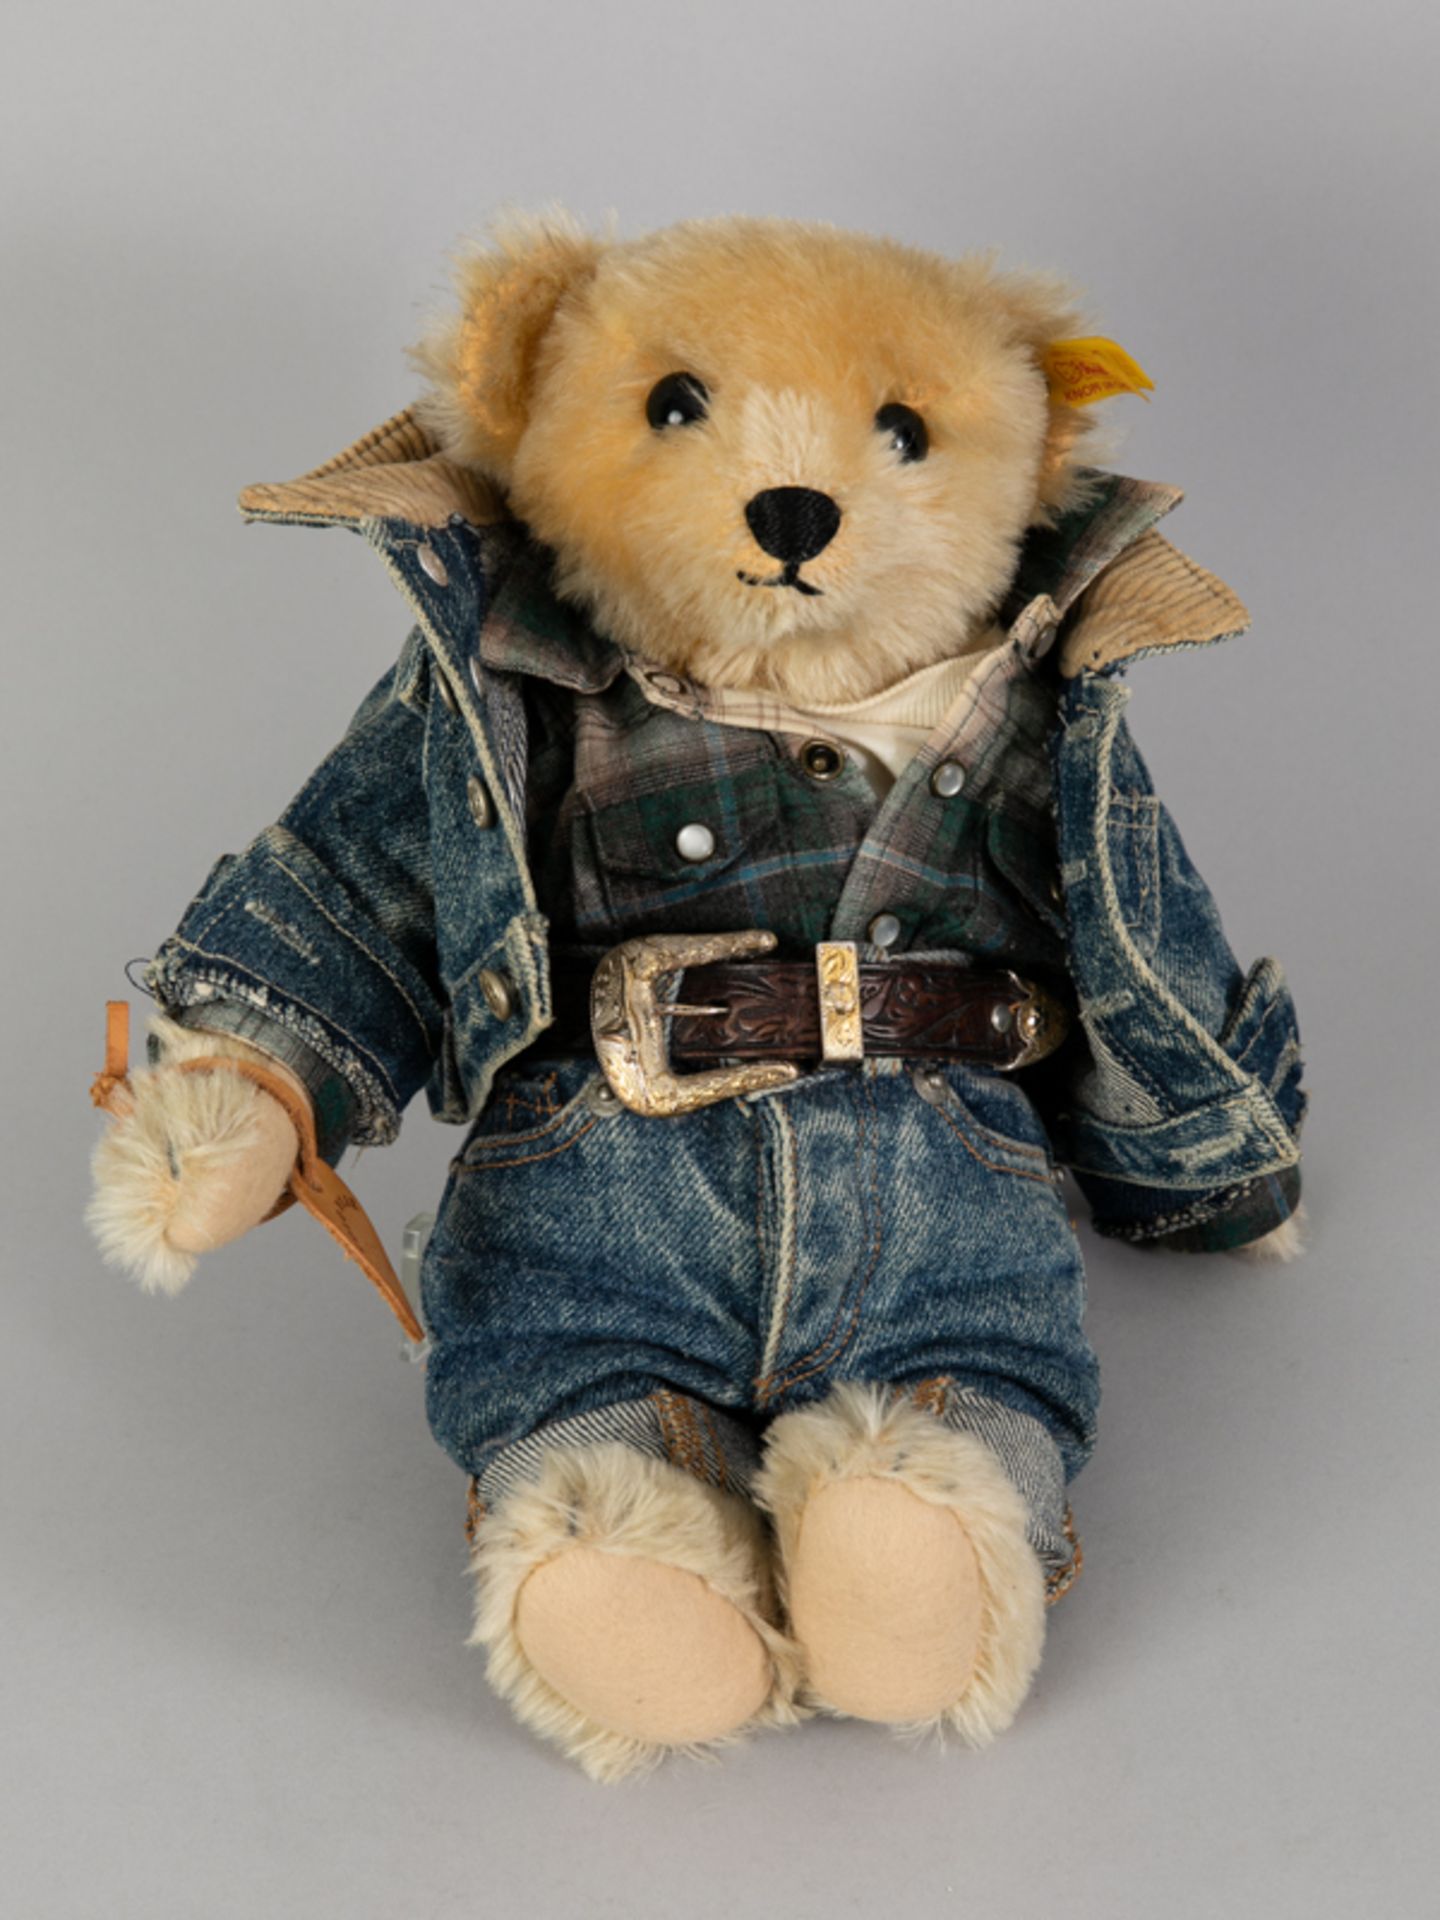 Steiff Teddy, Ralph Lauren, "Ranch Bear", 1991.